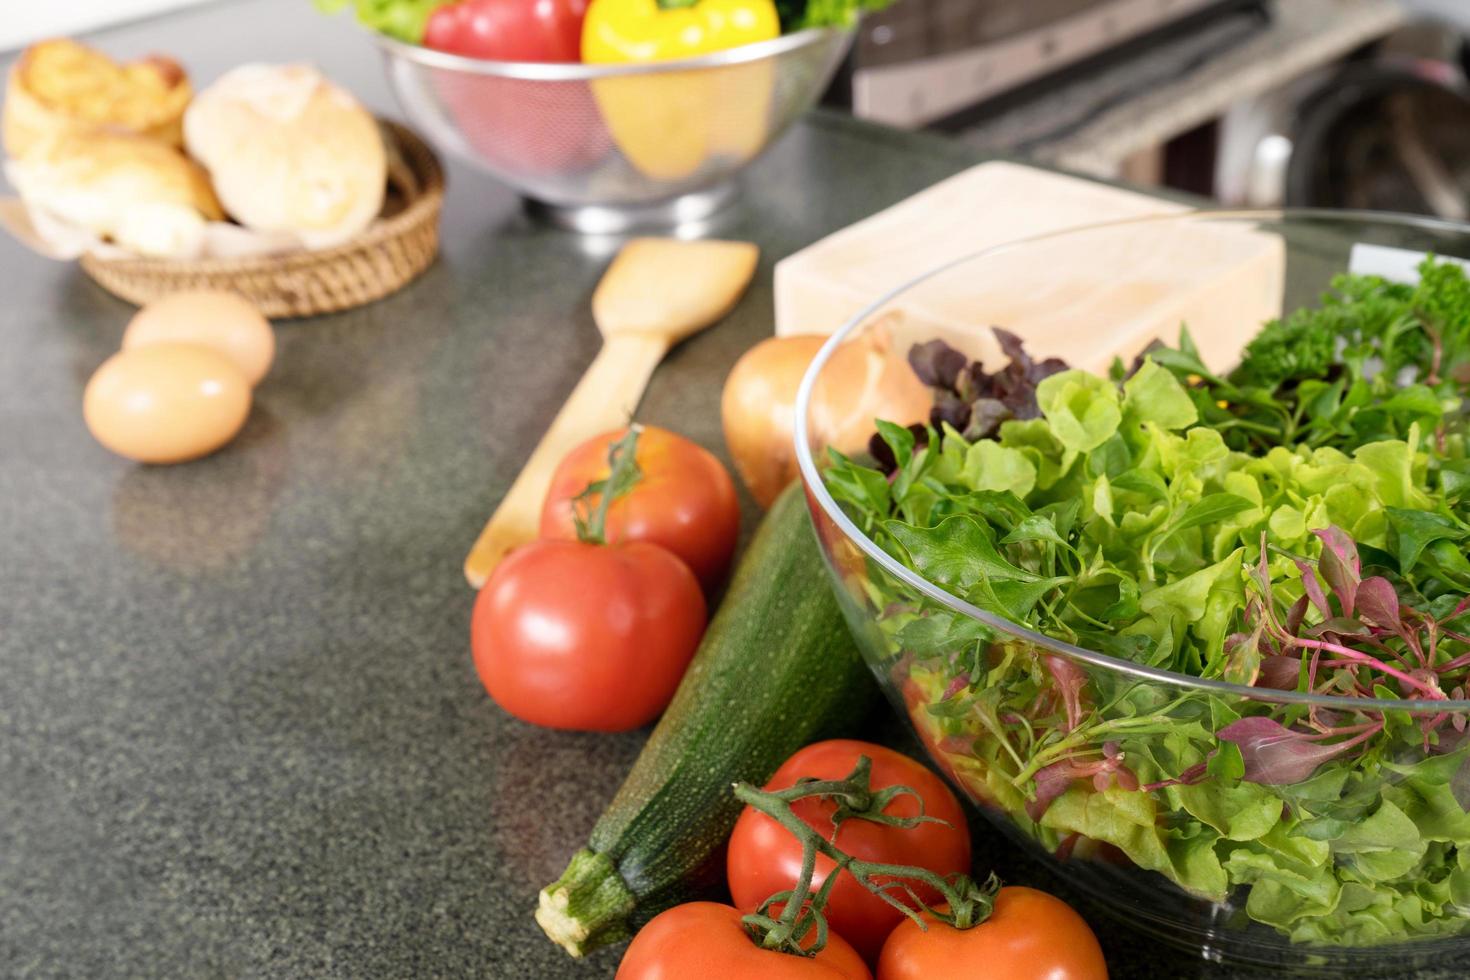 Salad prep in kitchen photo